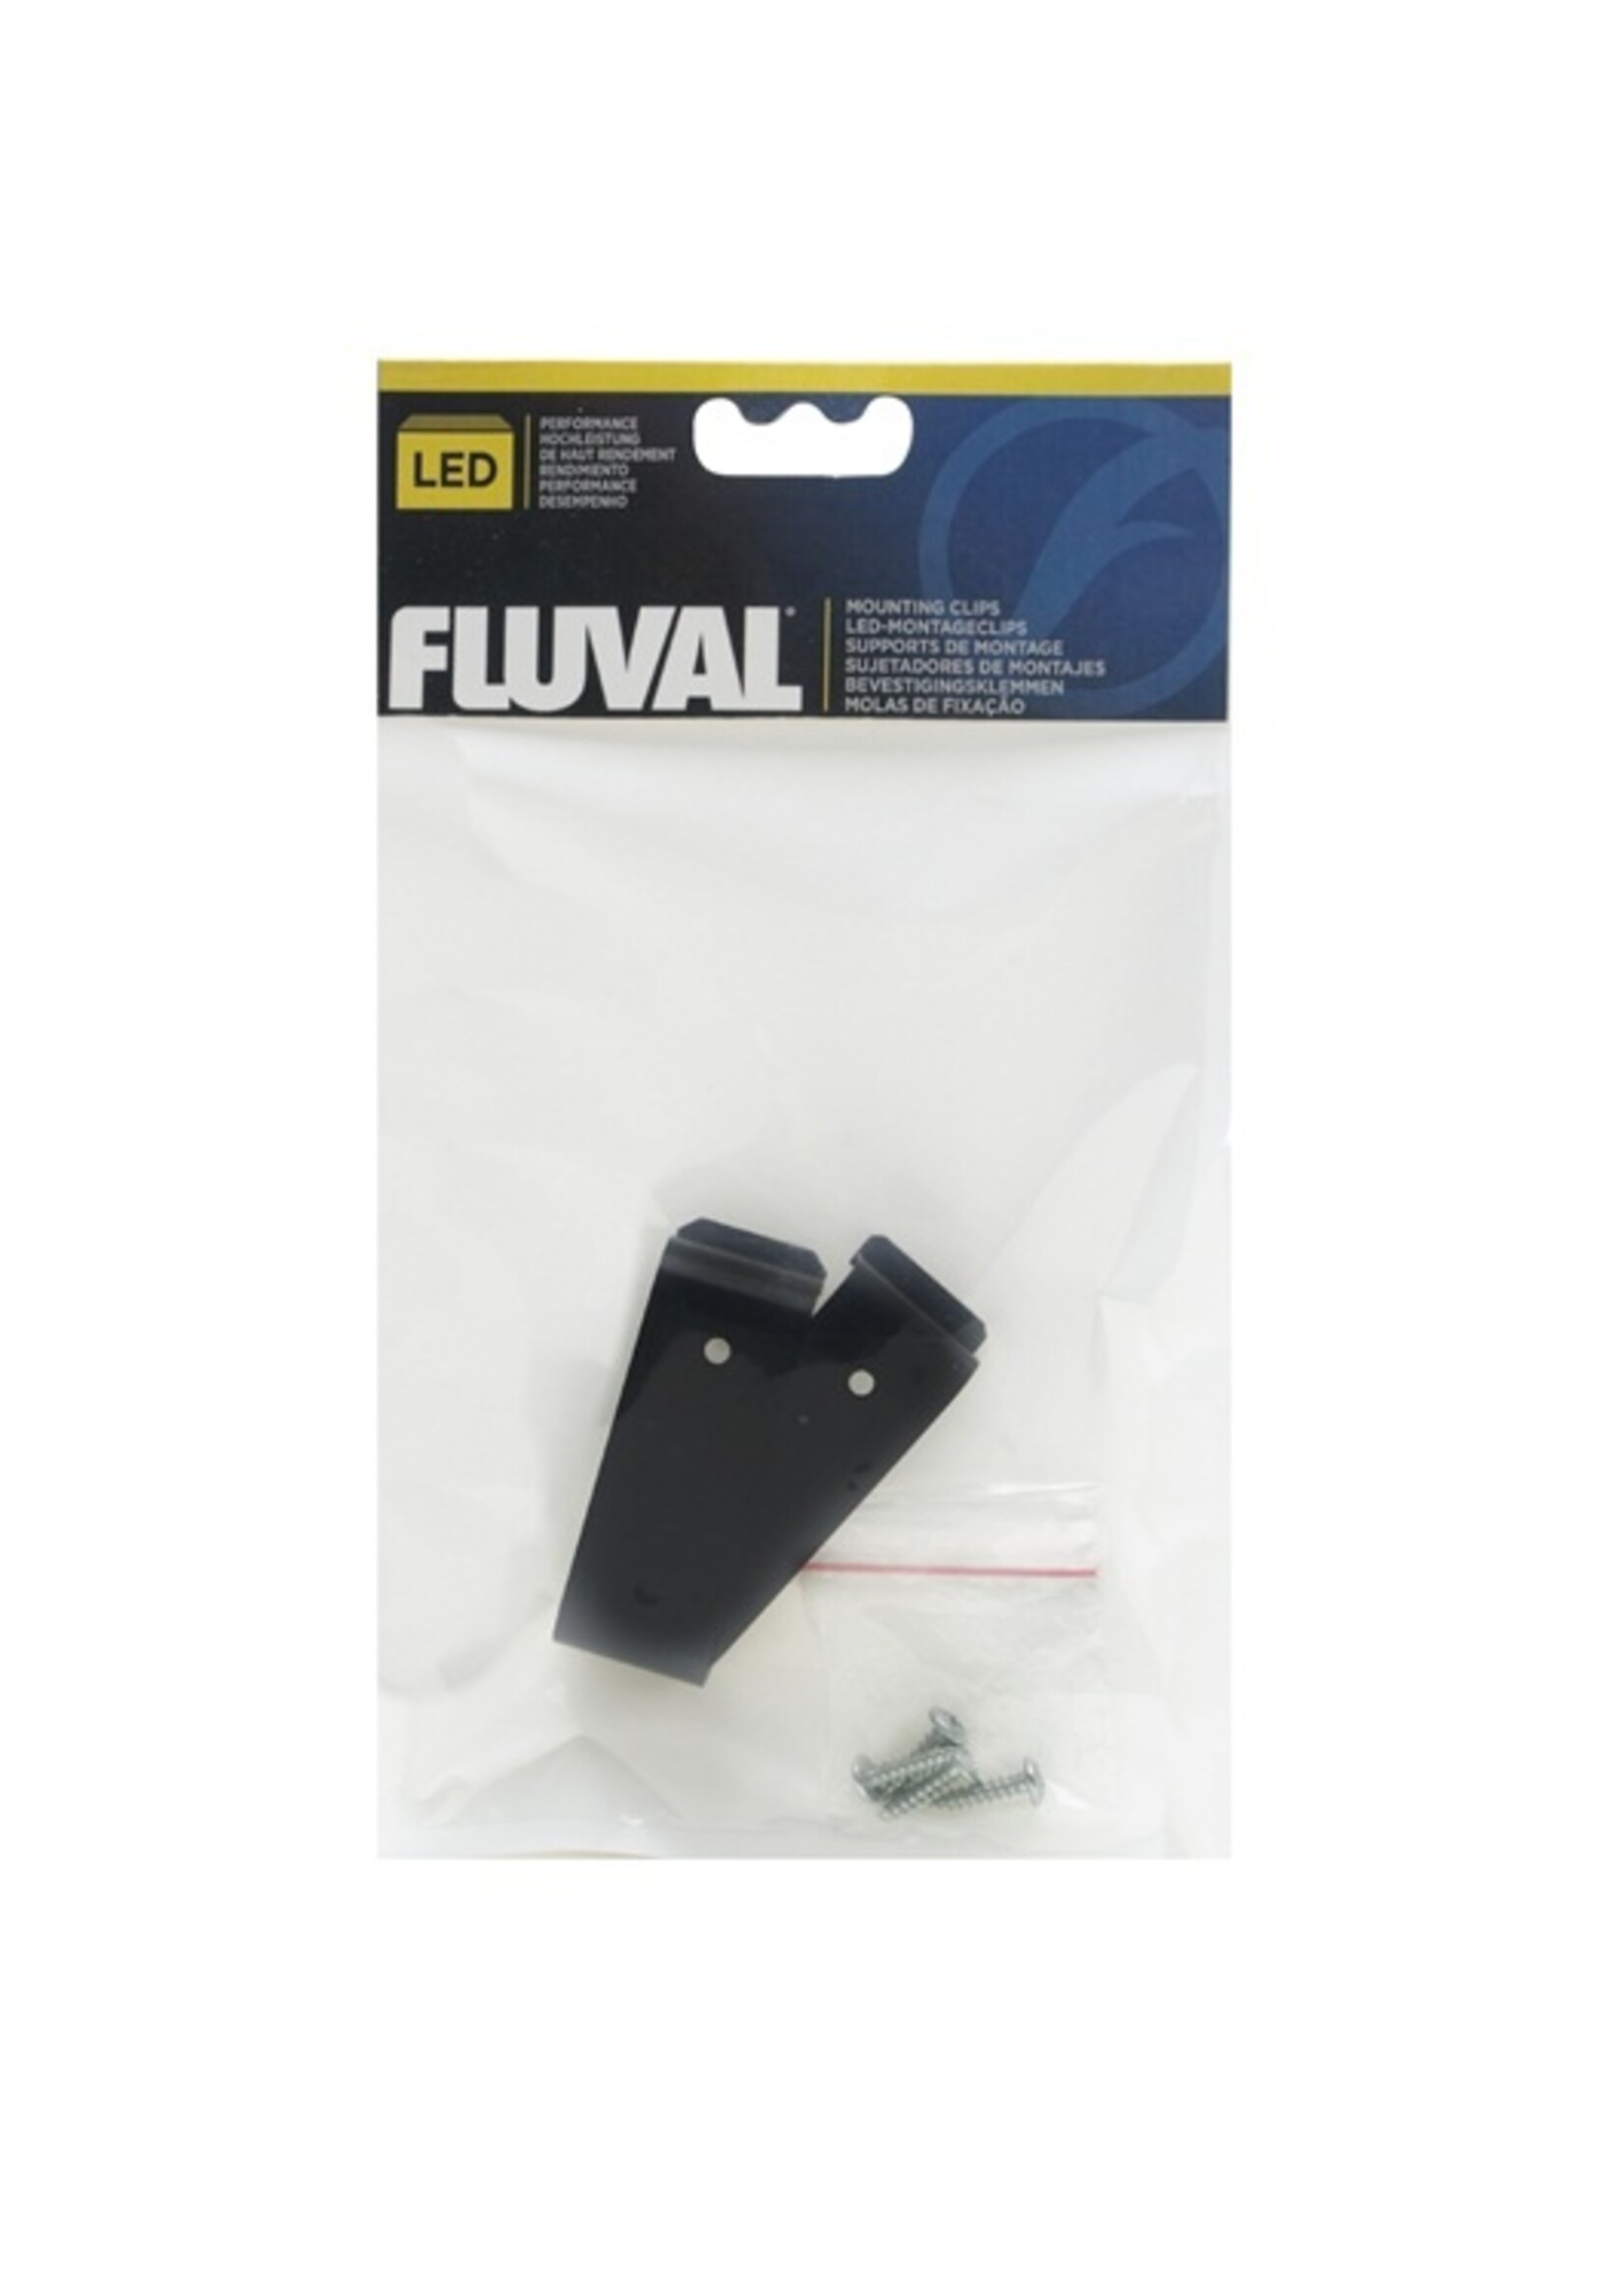 Fluval Fluval LED Mounting Kit A3978